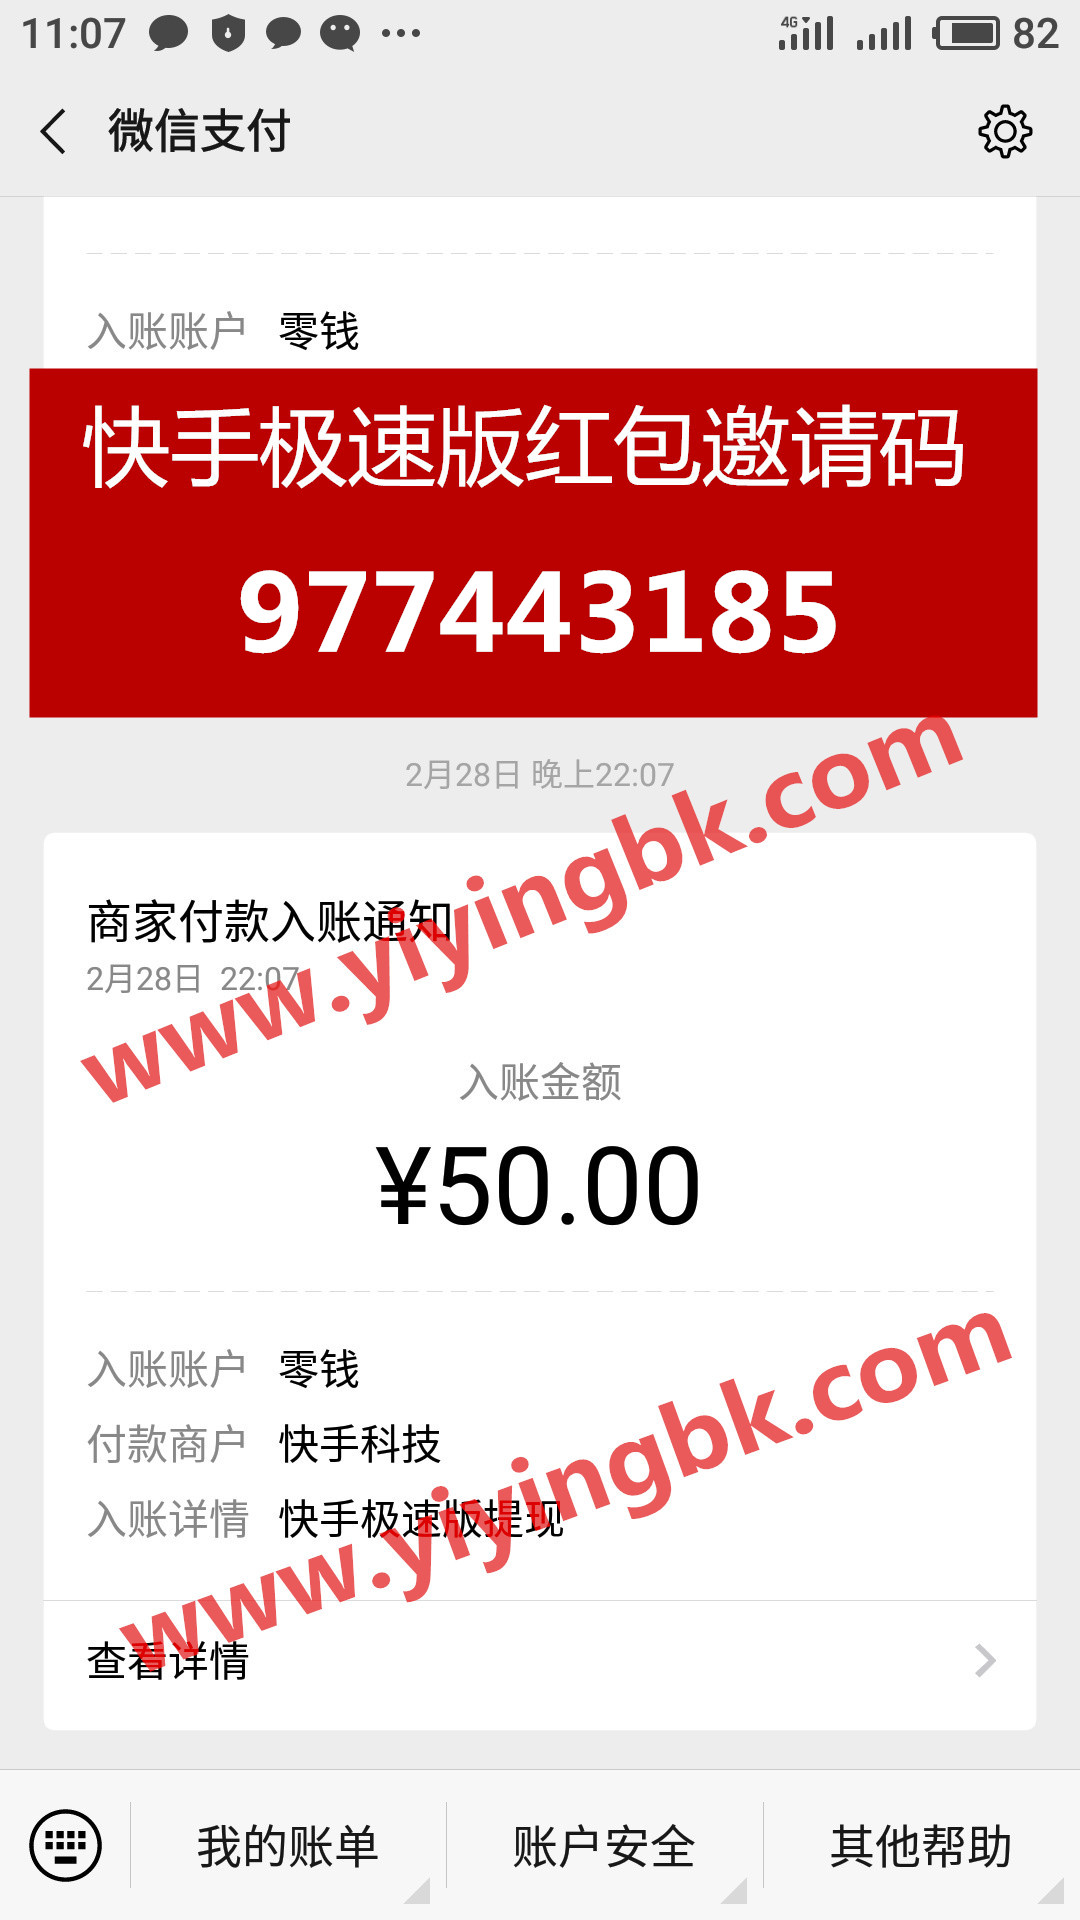 快手极速版红包邀请码977443185，快手极速版微信提现50元支付秒到账。www.yiyingbk.com